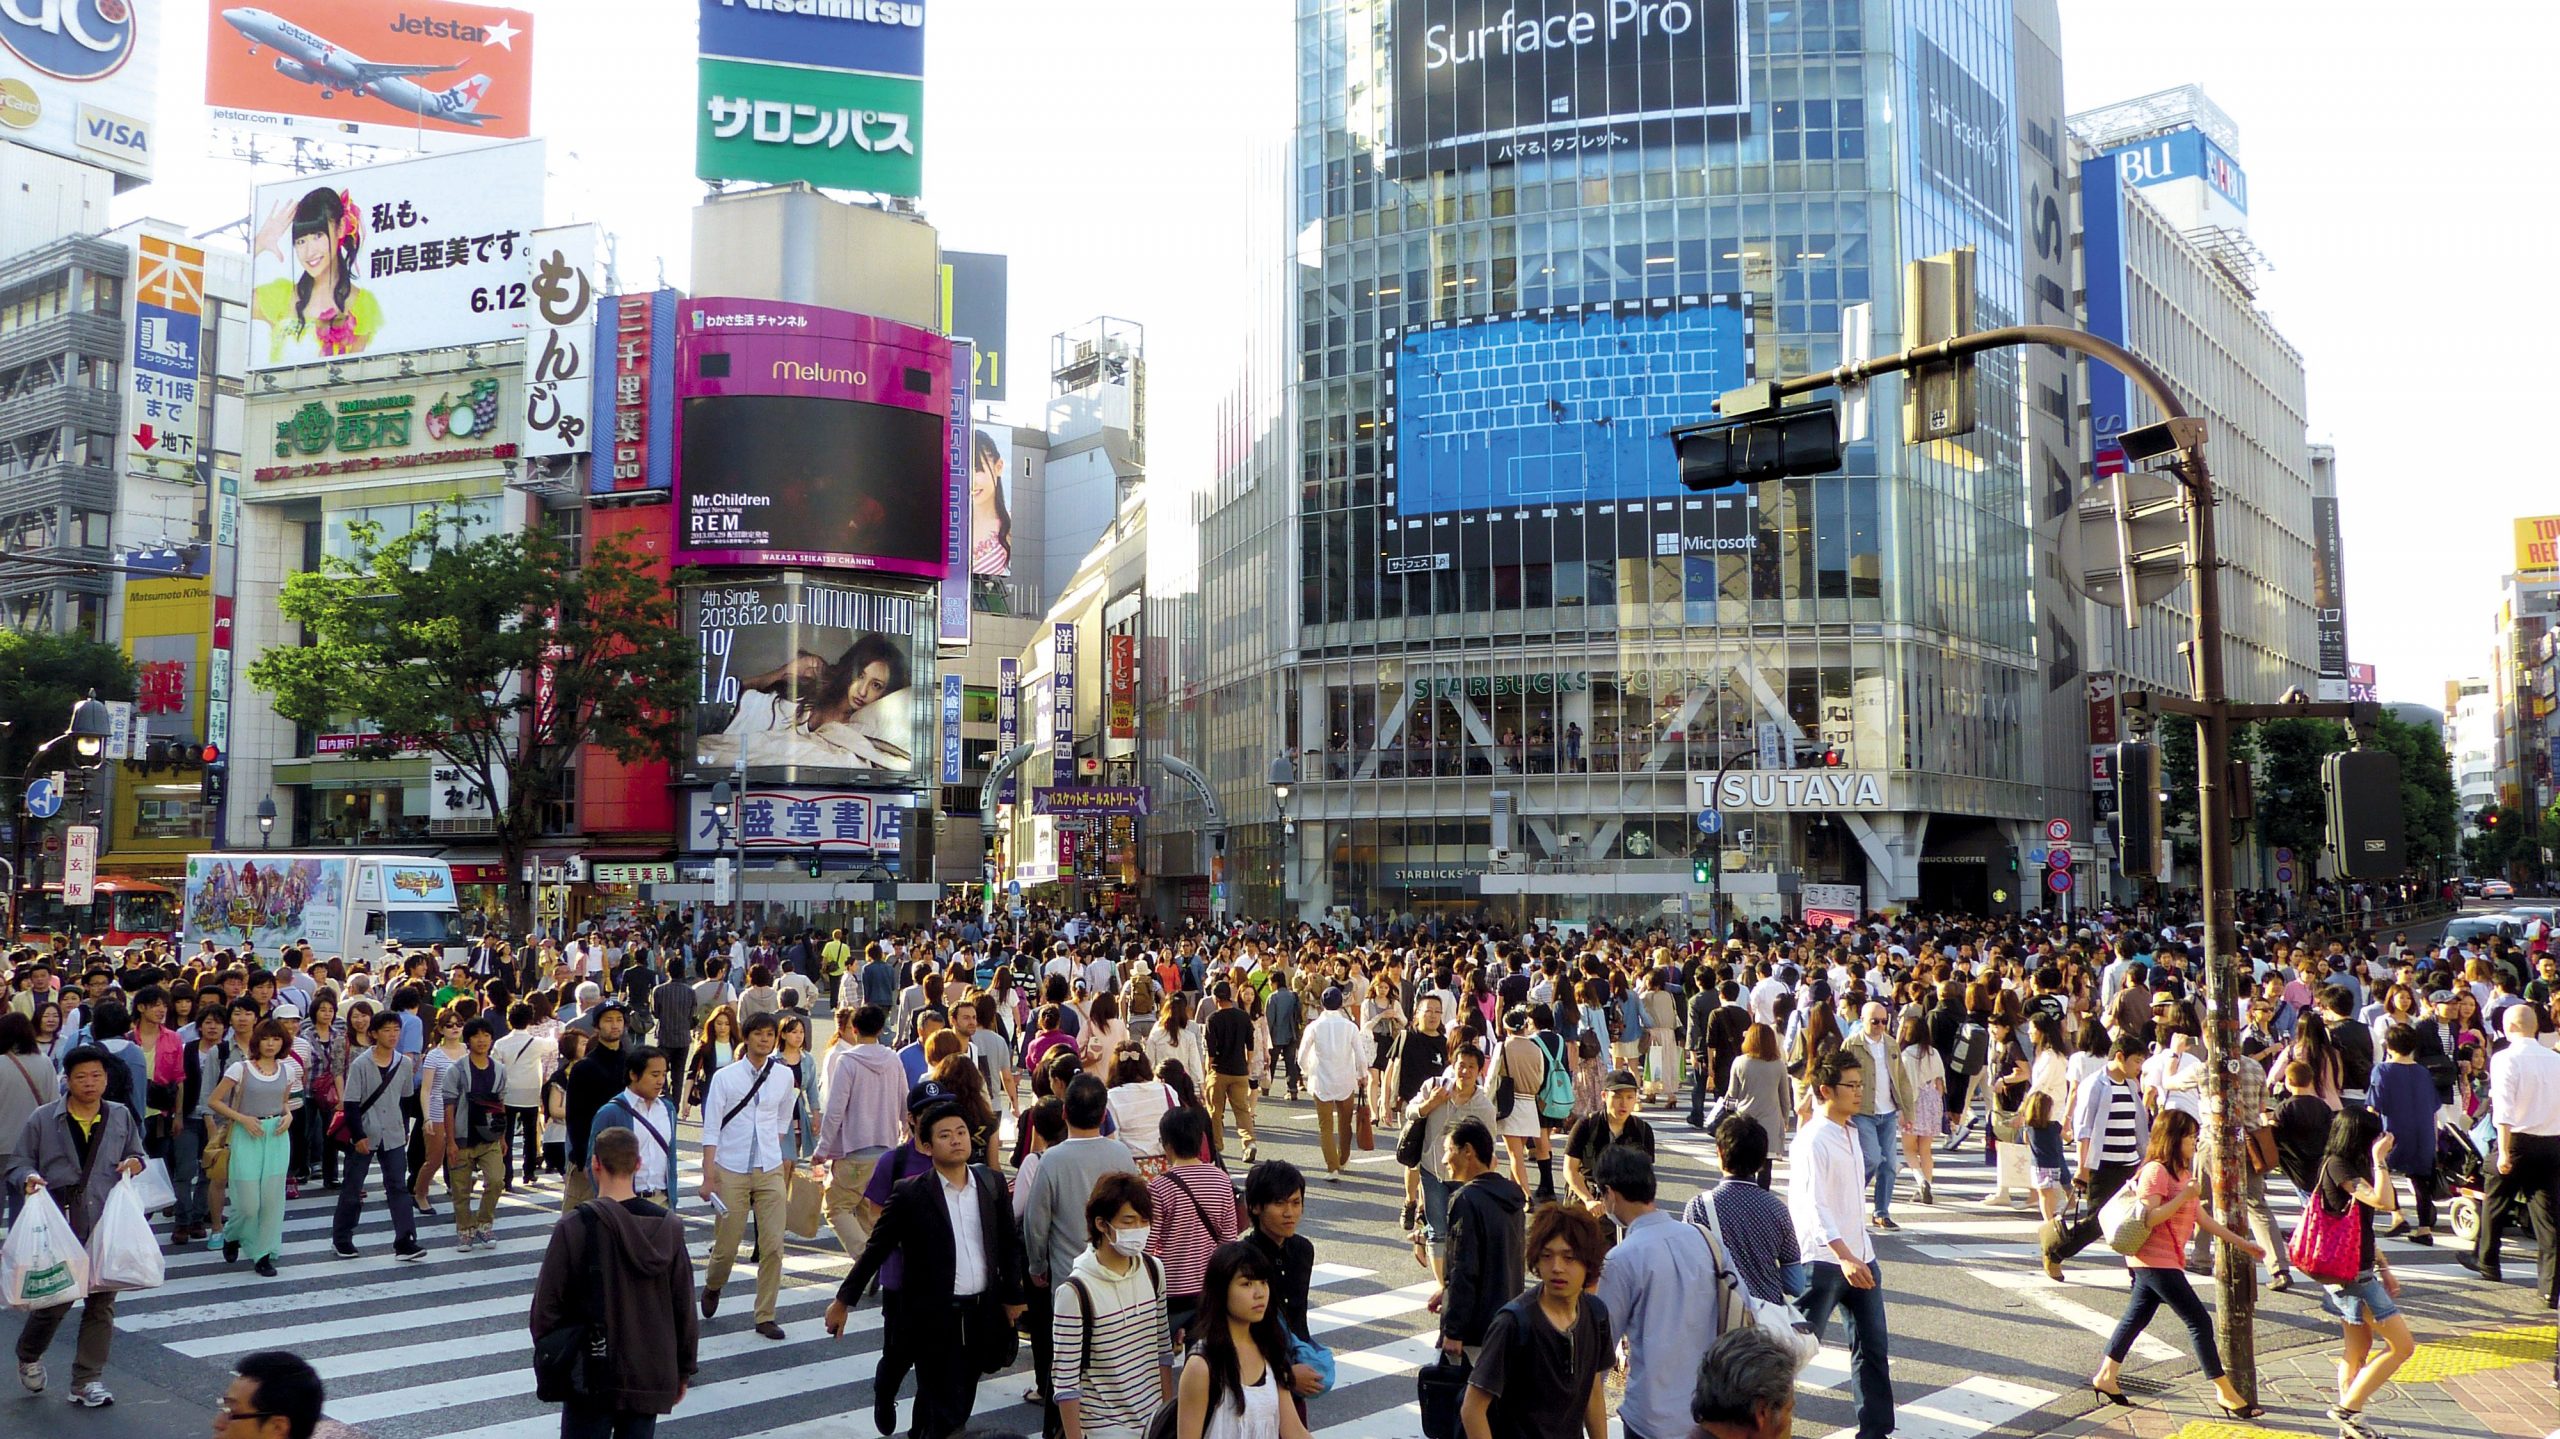 Group of people walking on street, japan wallpaper, tokyo, shibuya, japanese